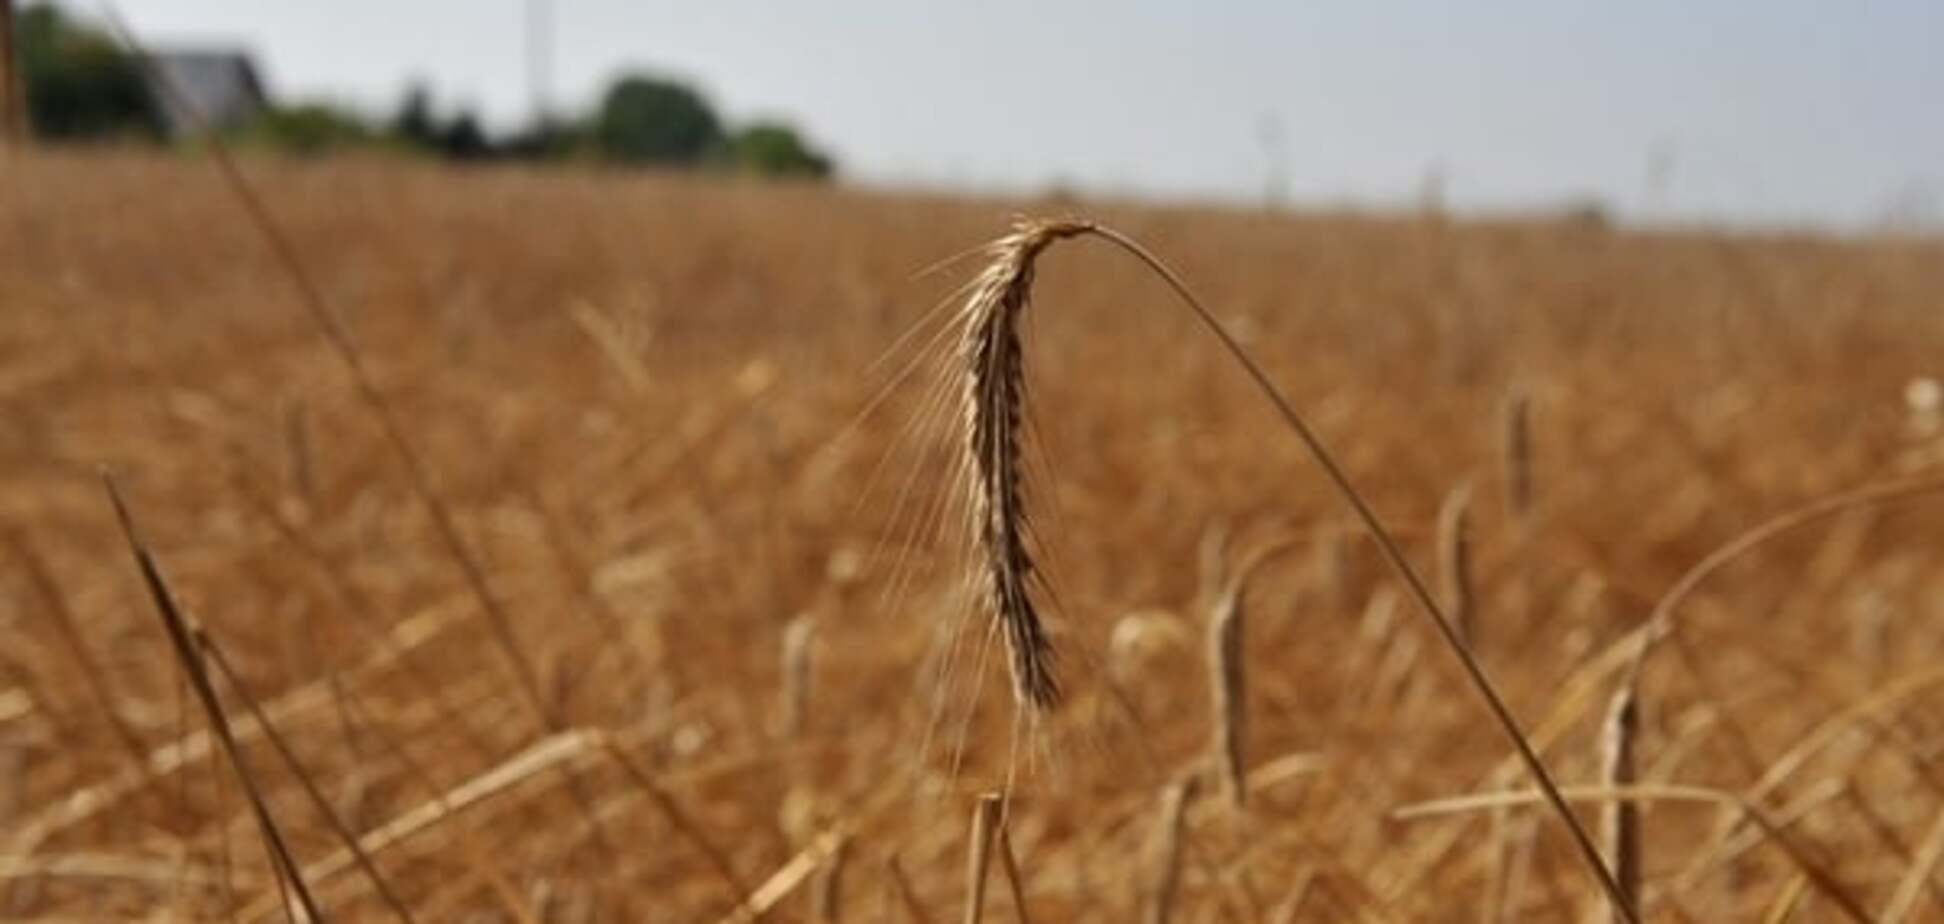 Павленко назвал аграрные предприятия, подлежащие приватизации